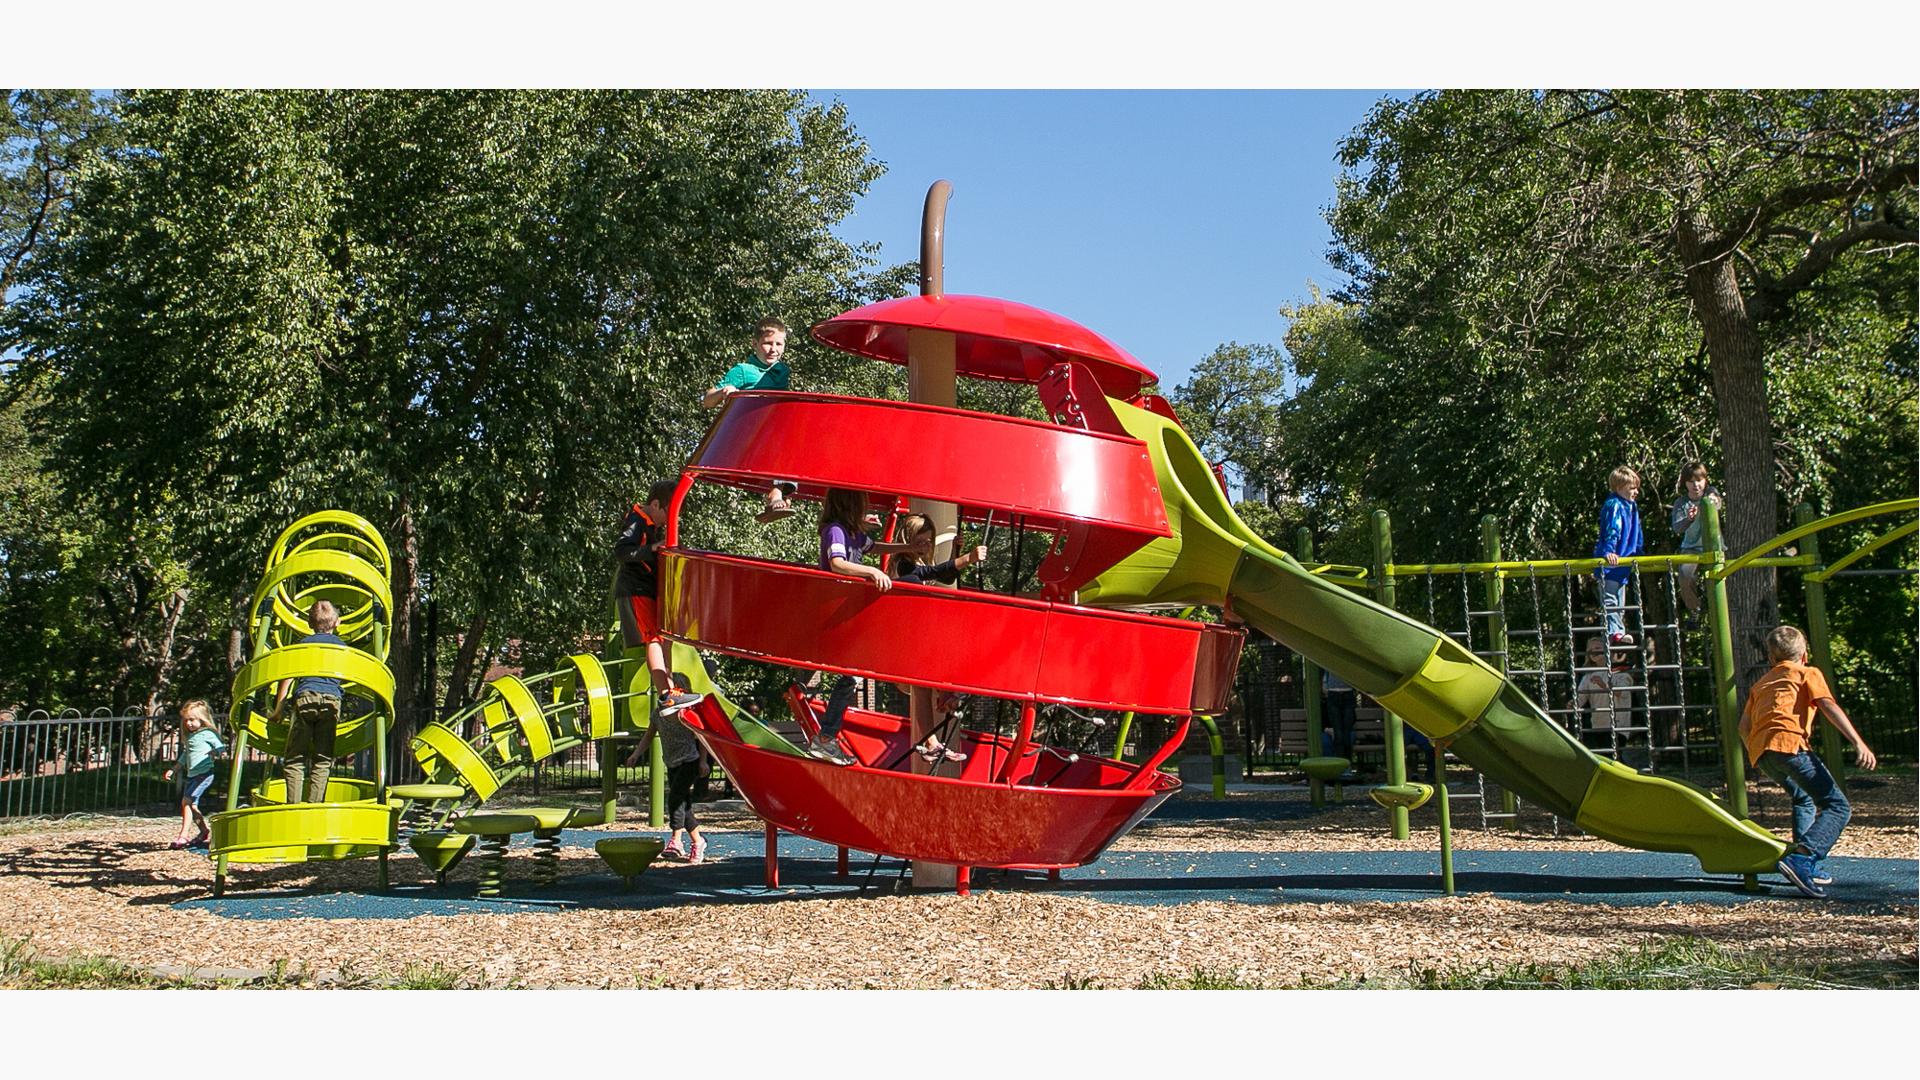 史蒂文斯广场公园独特的游乐场设计为社区引入了可玩艺术的概念。以苹果和蠕虫为主题的攀爬者可以让孩子们爬进虫子里面，穿过苹果，然后从另一端的滑梯爬出来。